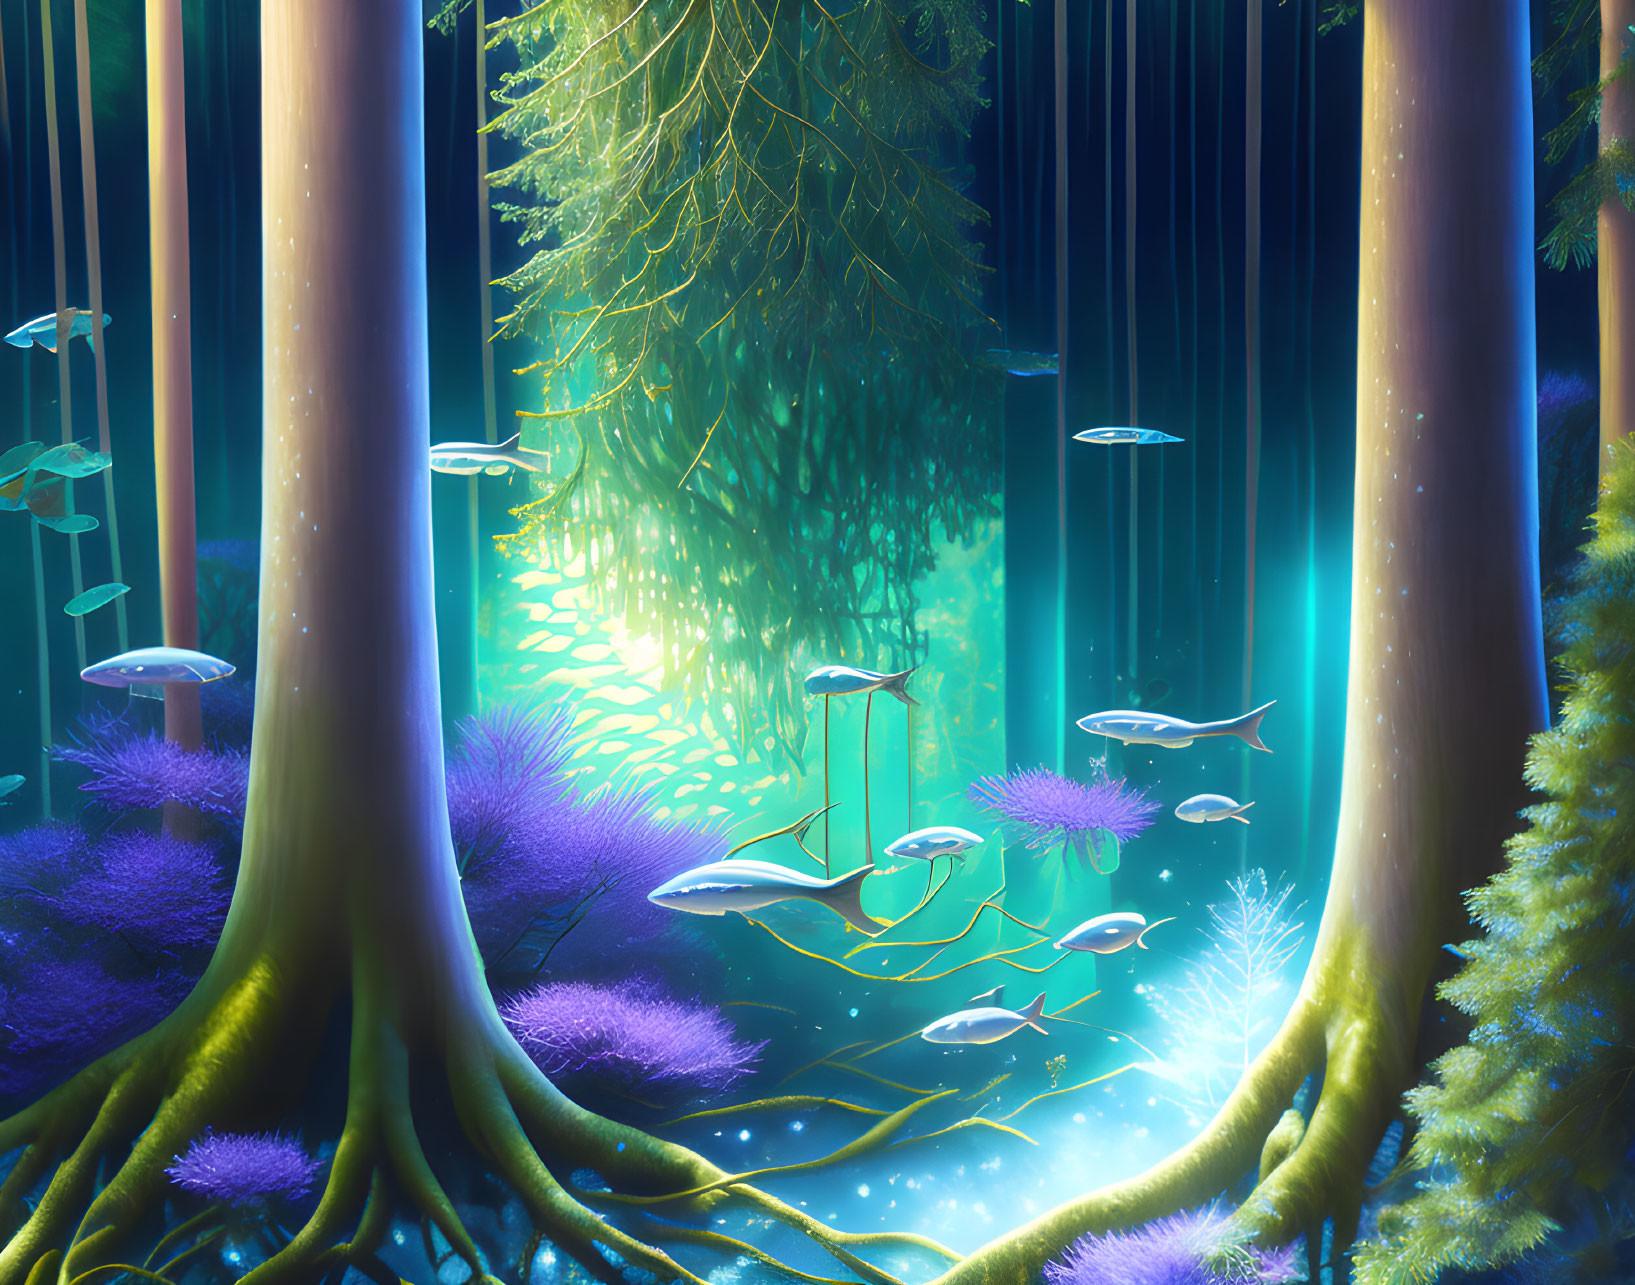 Forest under water